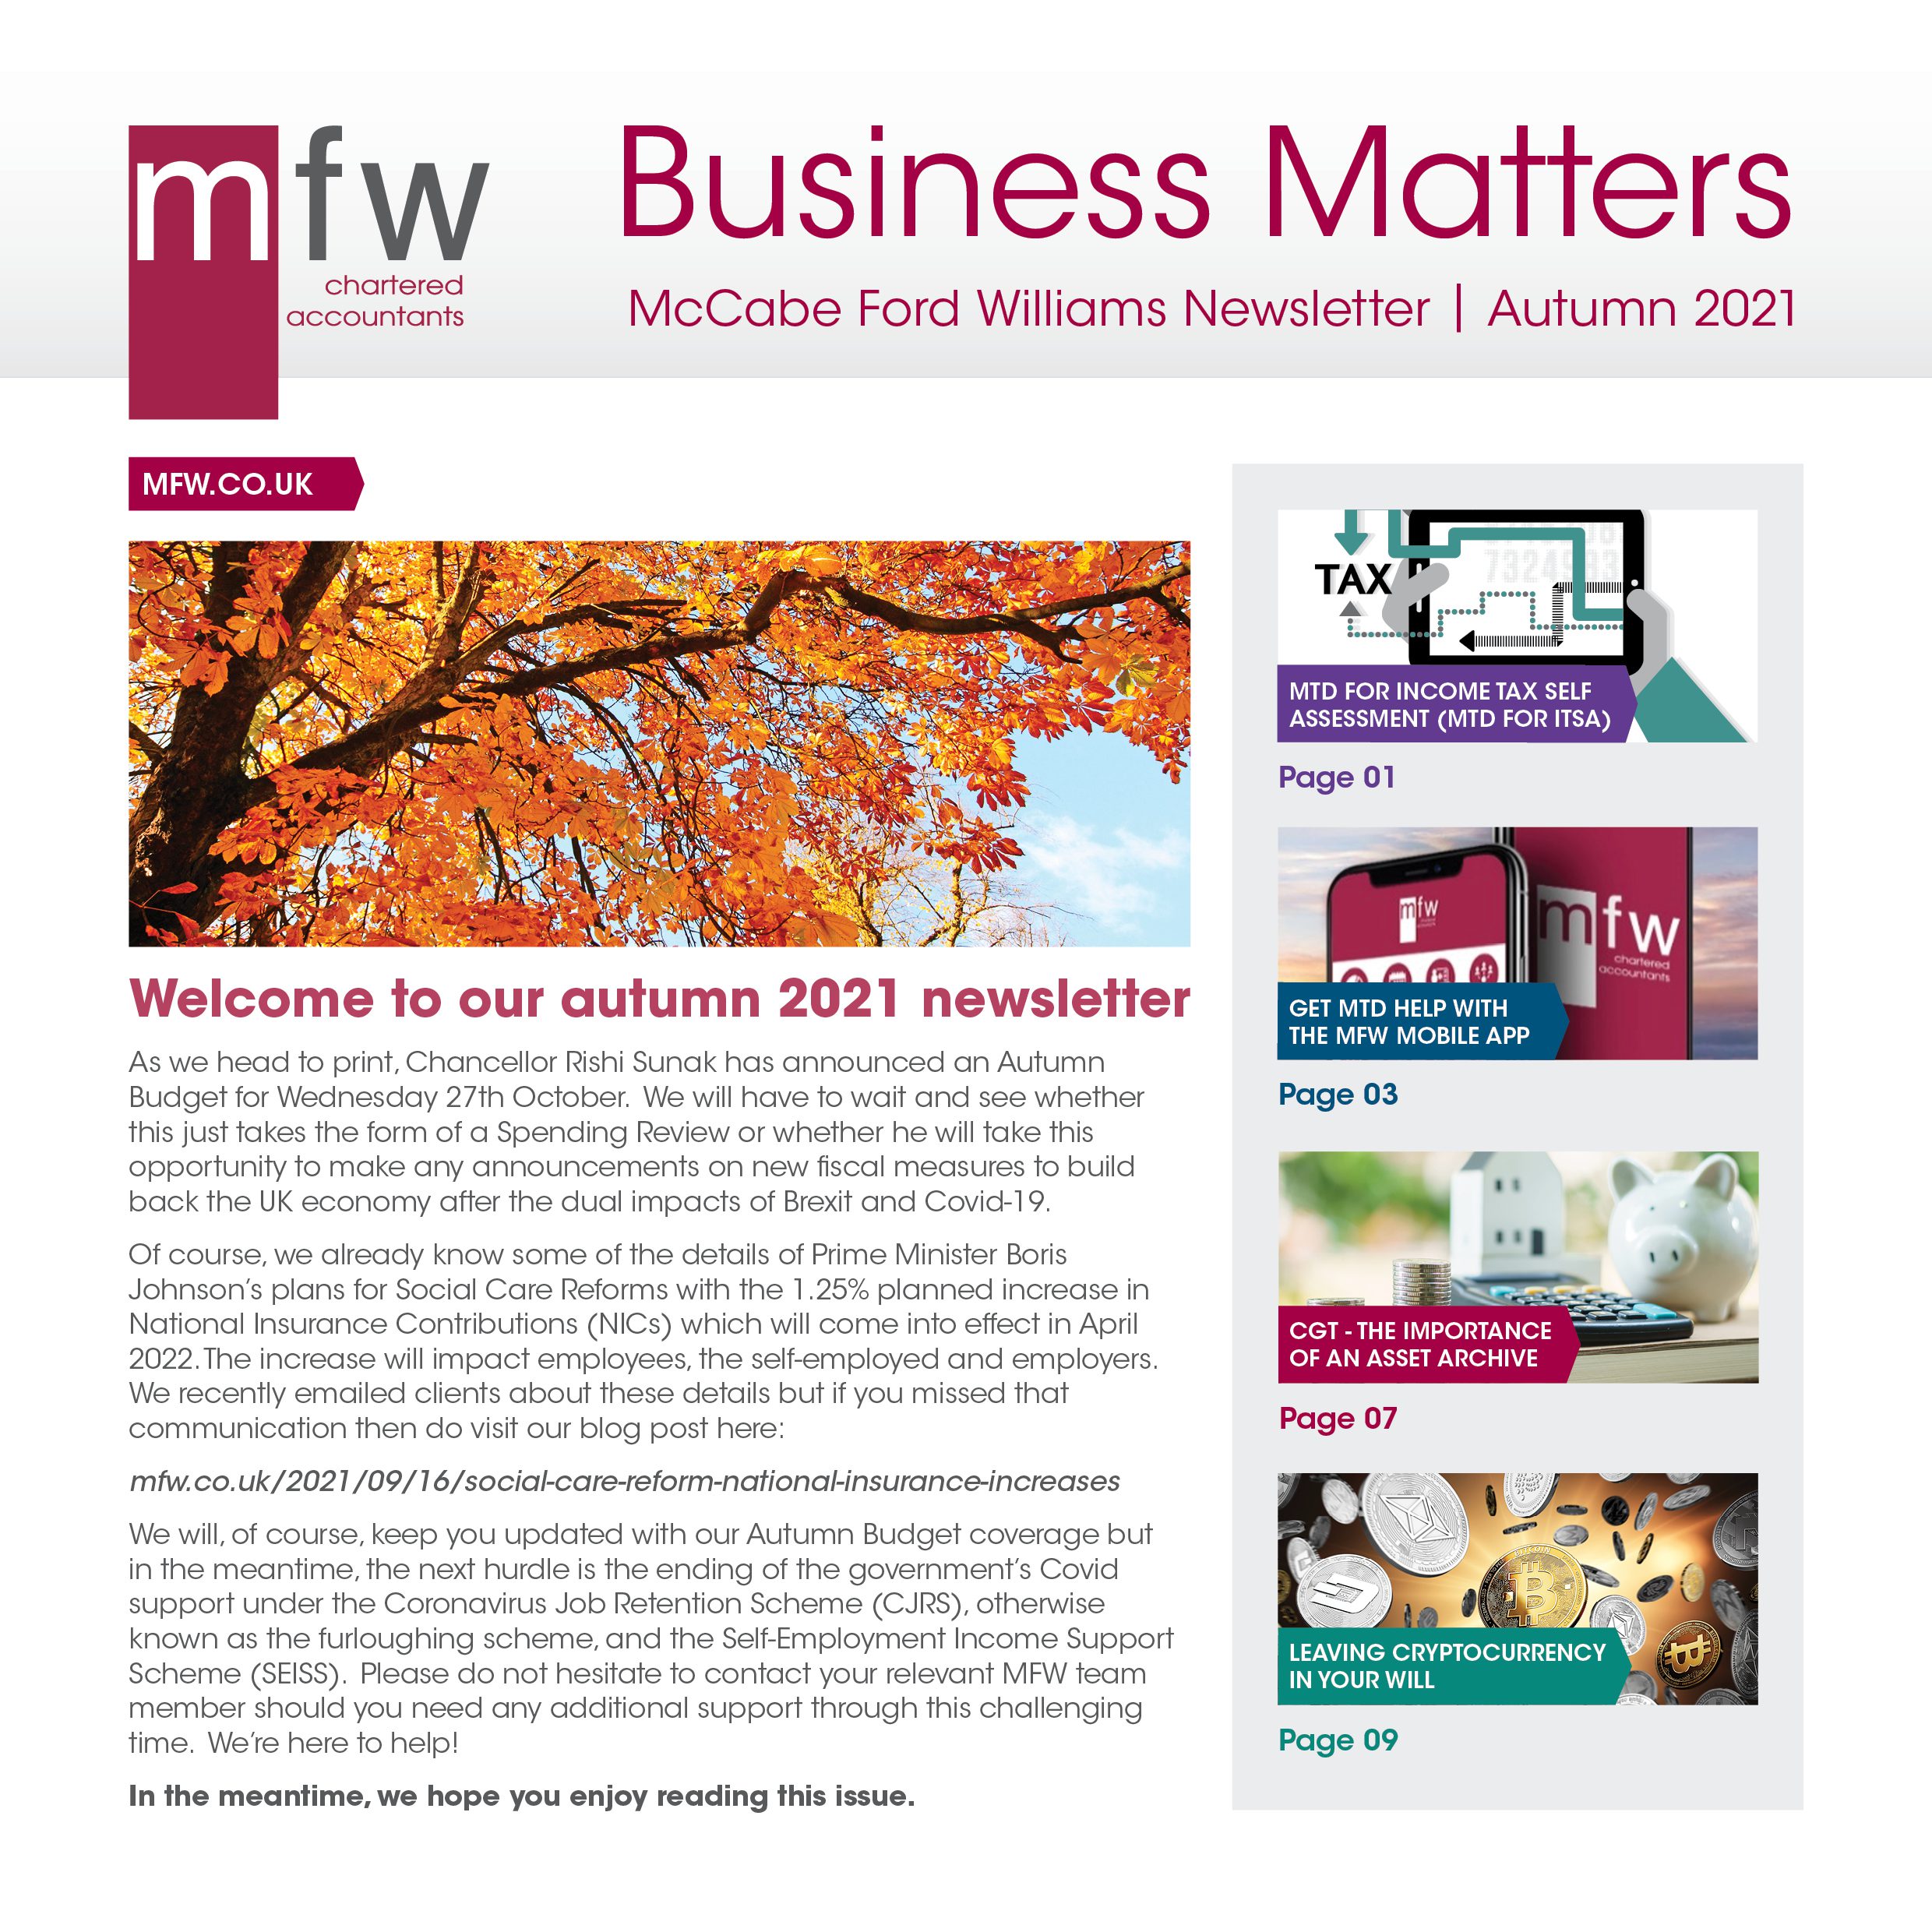 MFW Business Matters autumn 2021 newsletter